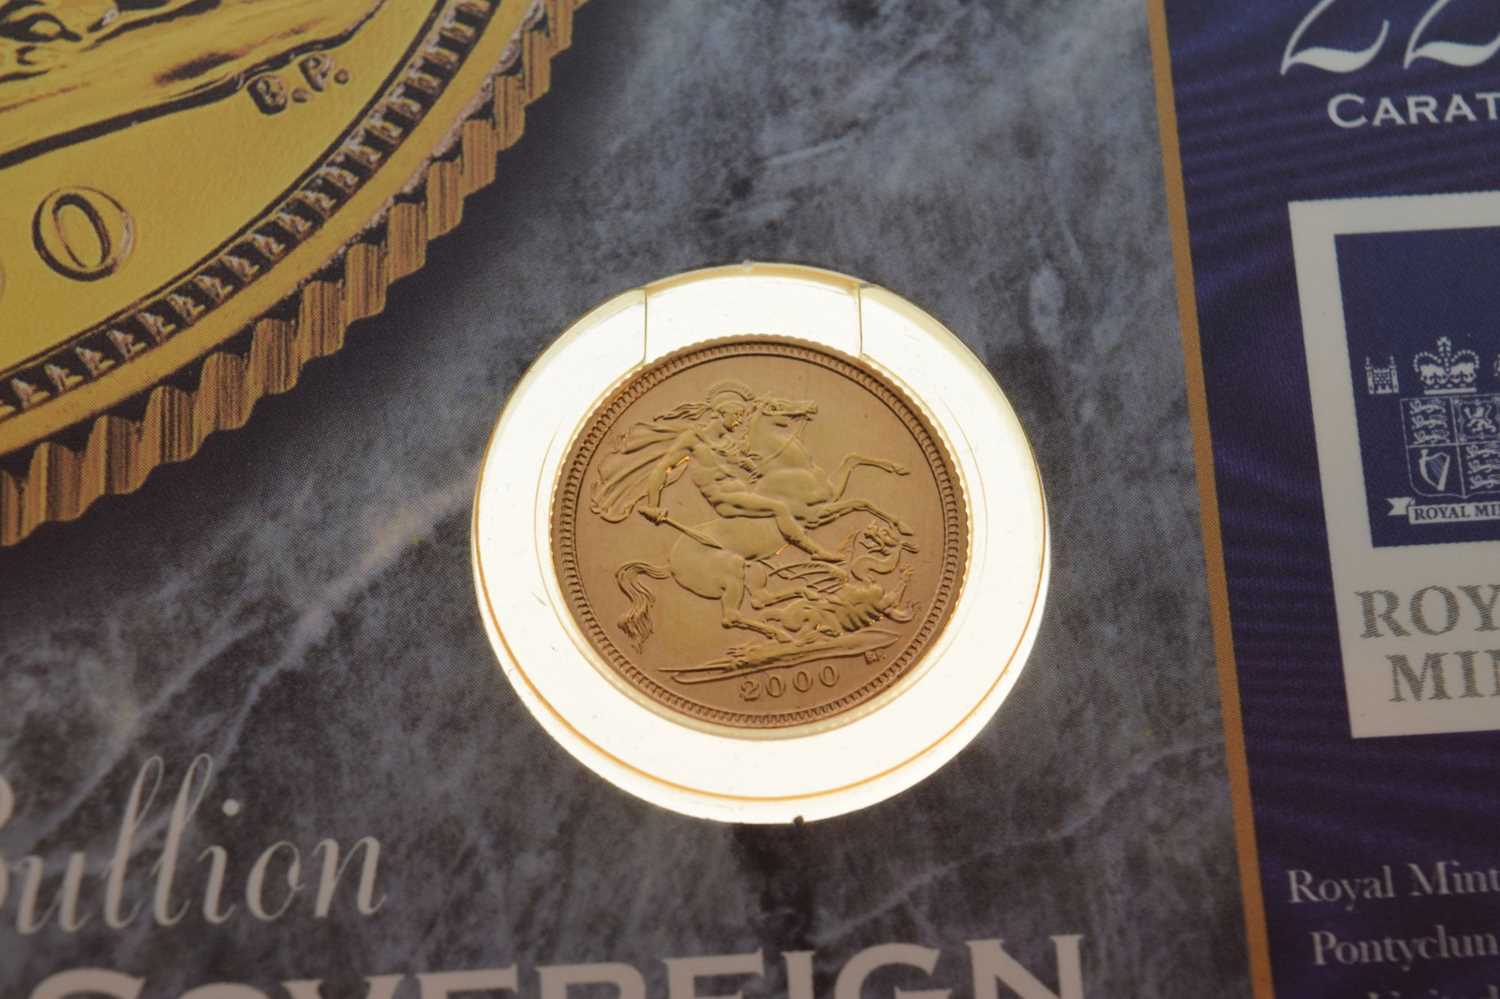 Royal Mint Elizabeth II 2000 gold half sovereign in presentation pack - Image 3 of 5